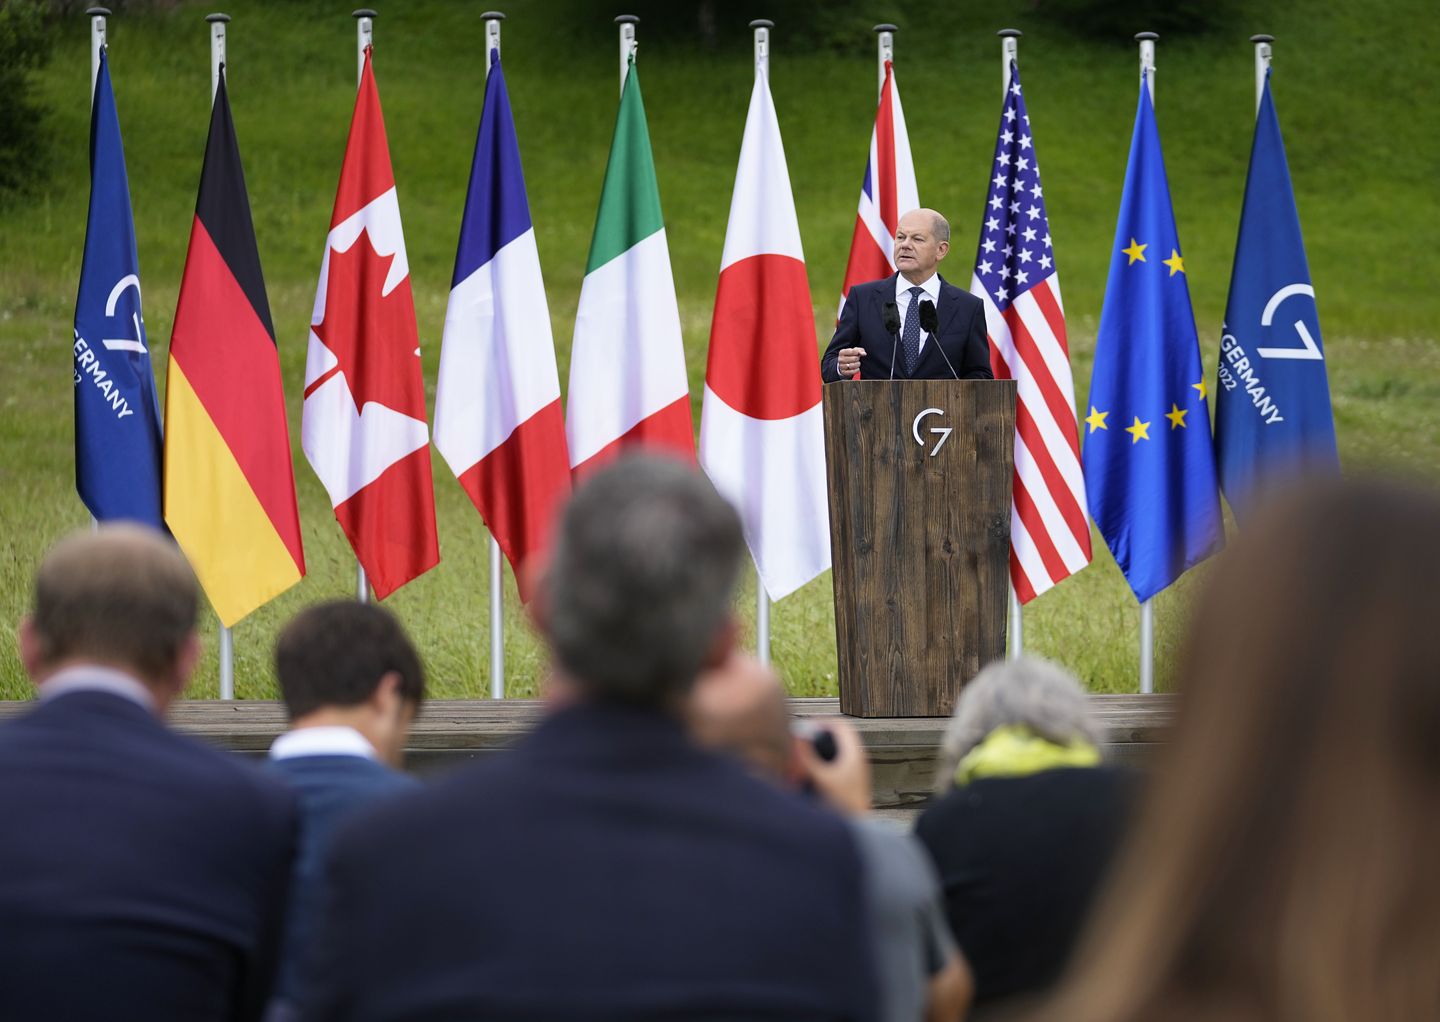 G7 zirvesi, Rusya'da petrol fiyatları üst sınırı konusunda anlaşma sağlanamadan sona erdi